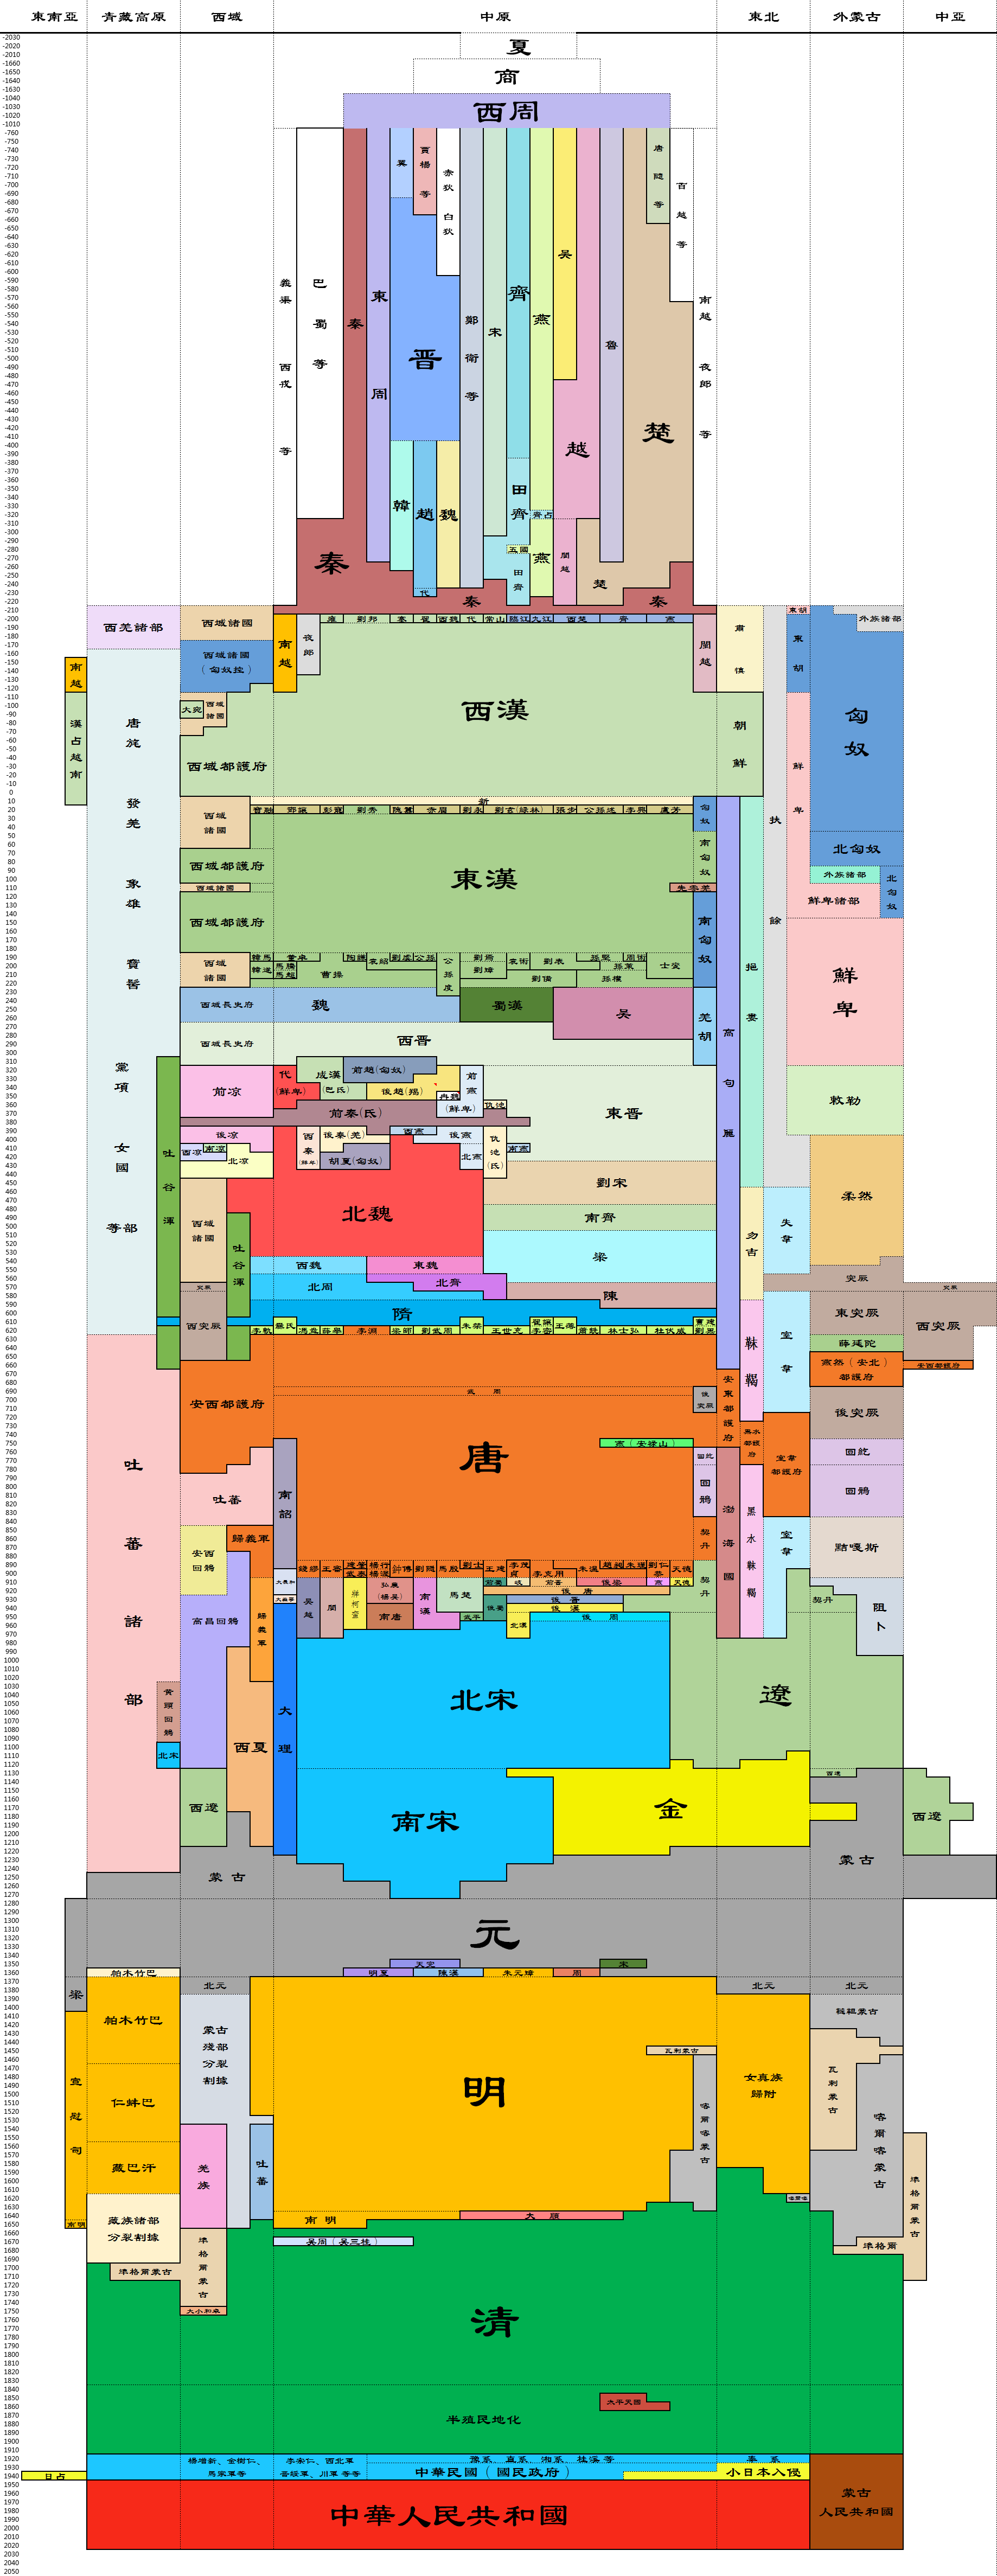 中国历朝历代跨度表 图片高清版+Excel表格-福利巴士